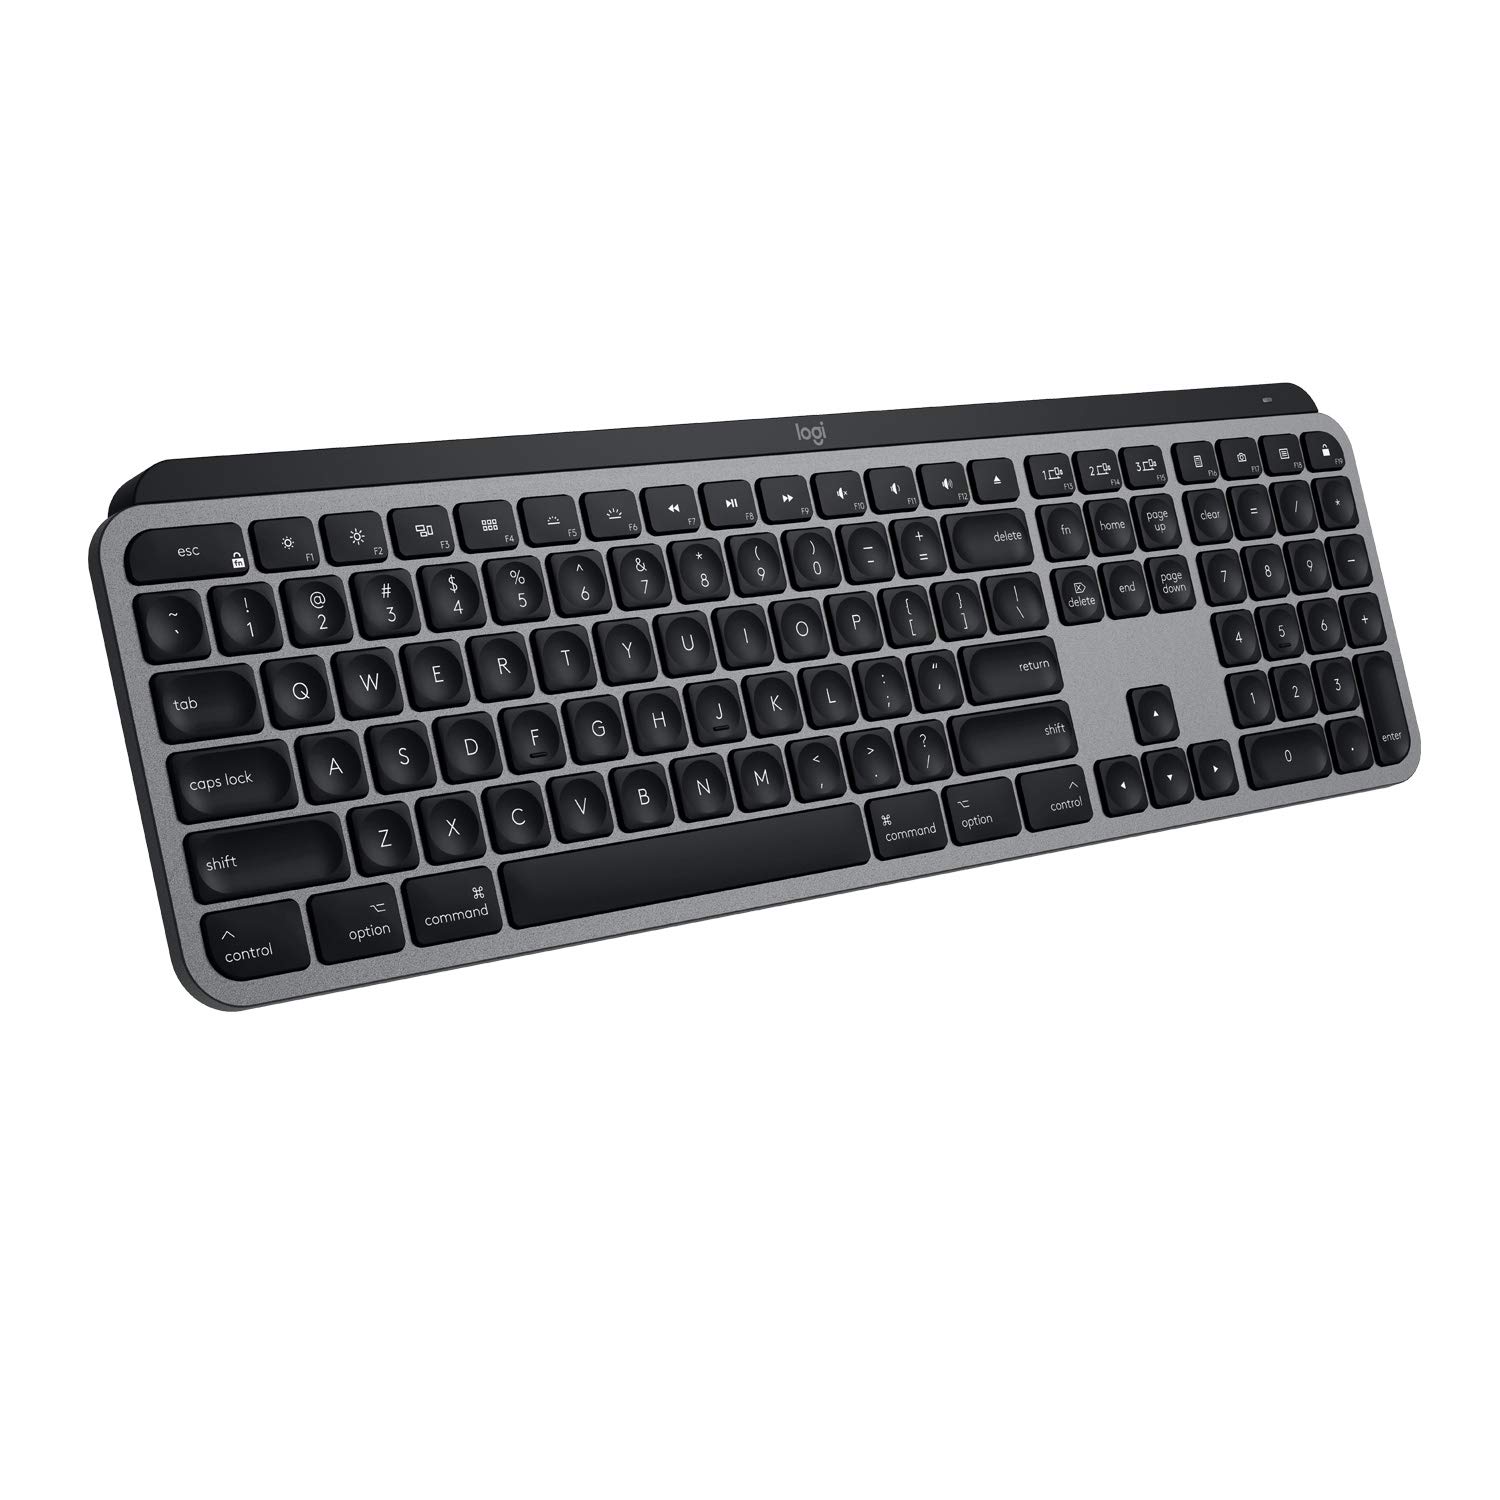 Logitech MX Keys Advanced Wireless Illuminated Keyboard for Mac $79.99 + Free Shipping